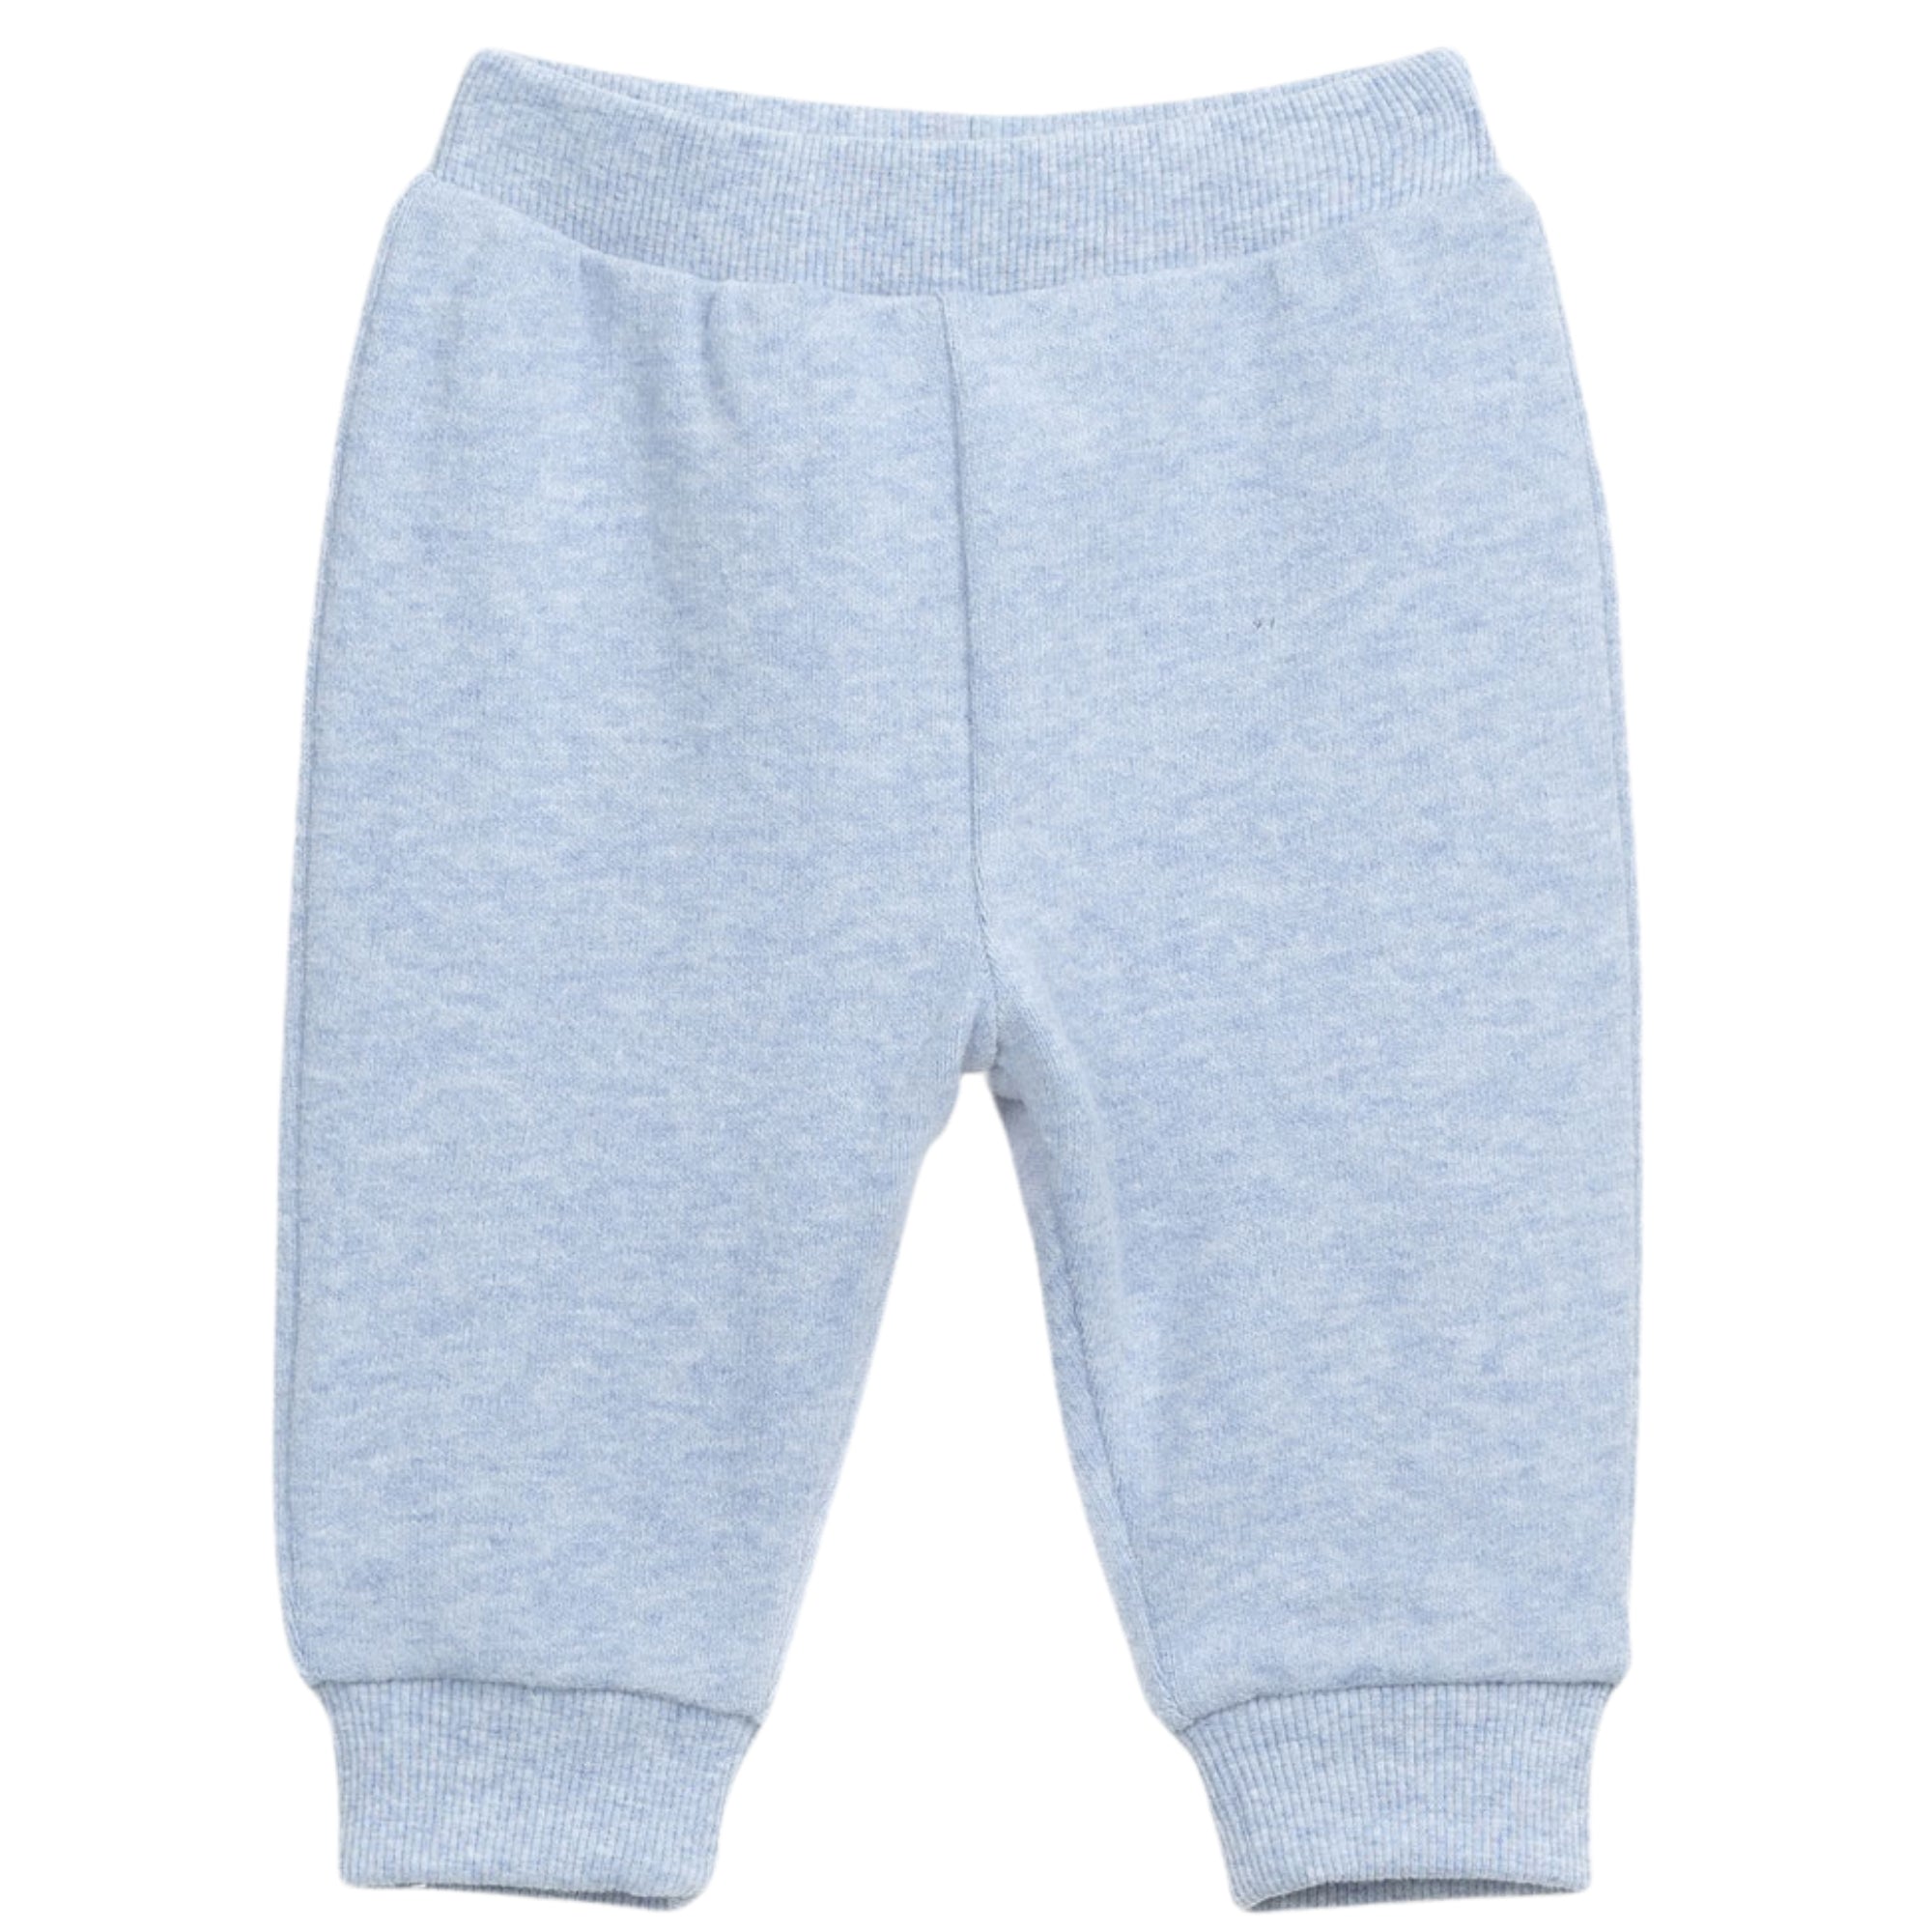 pantalone-tuta-azzurro-ideale-per-mezza-stagione-bambino